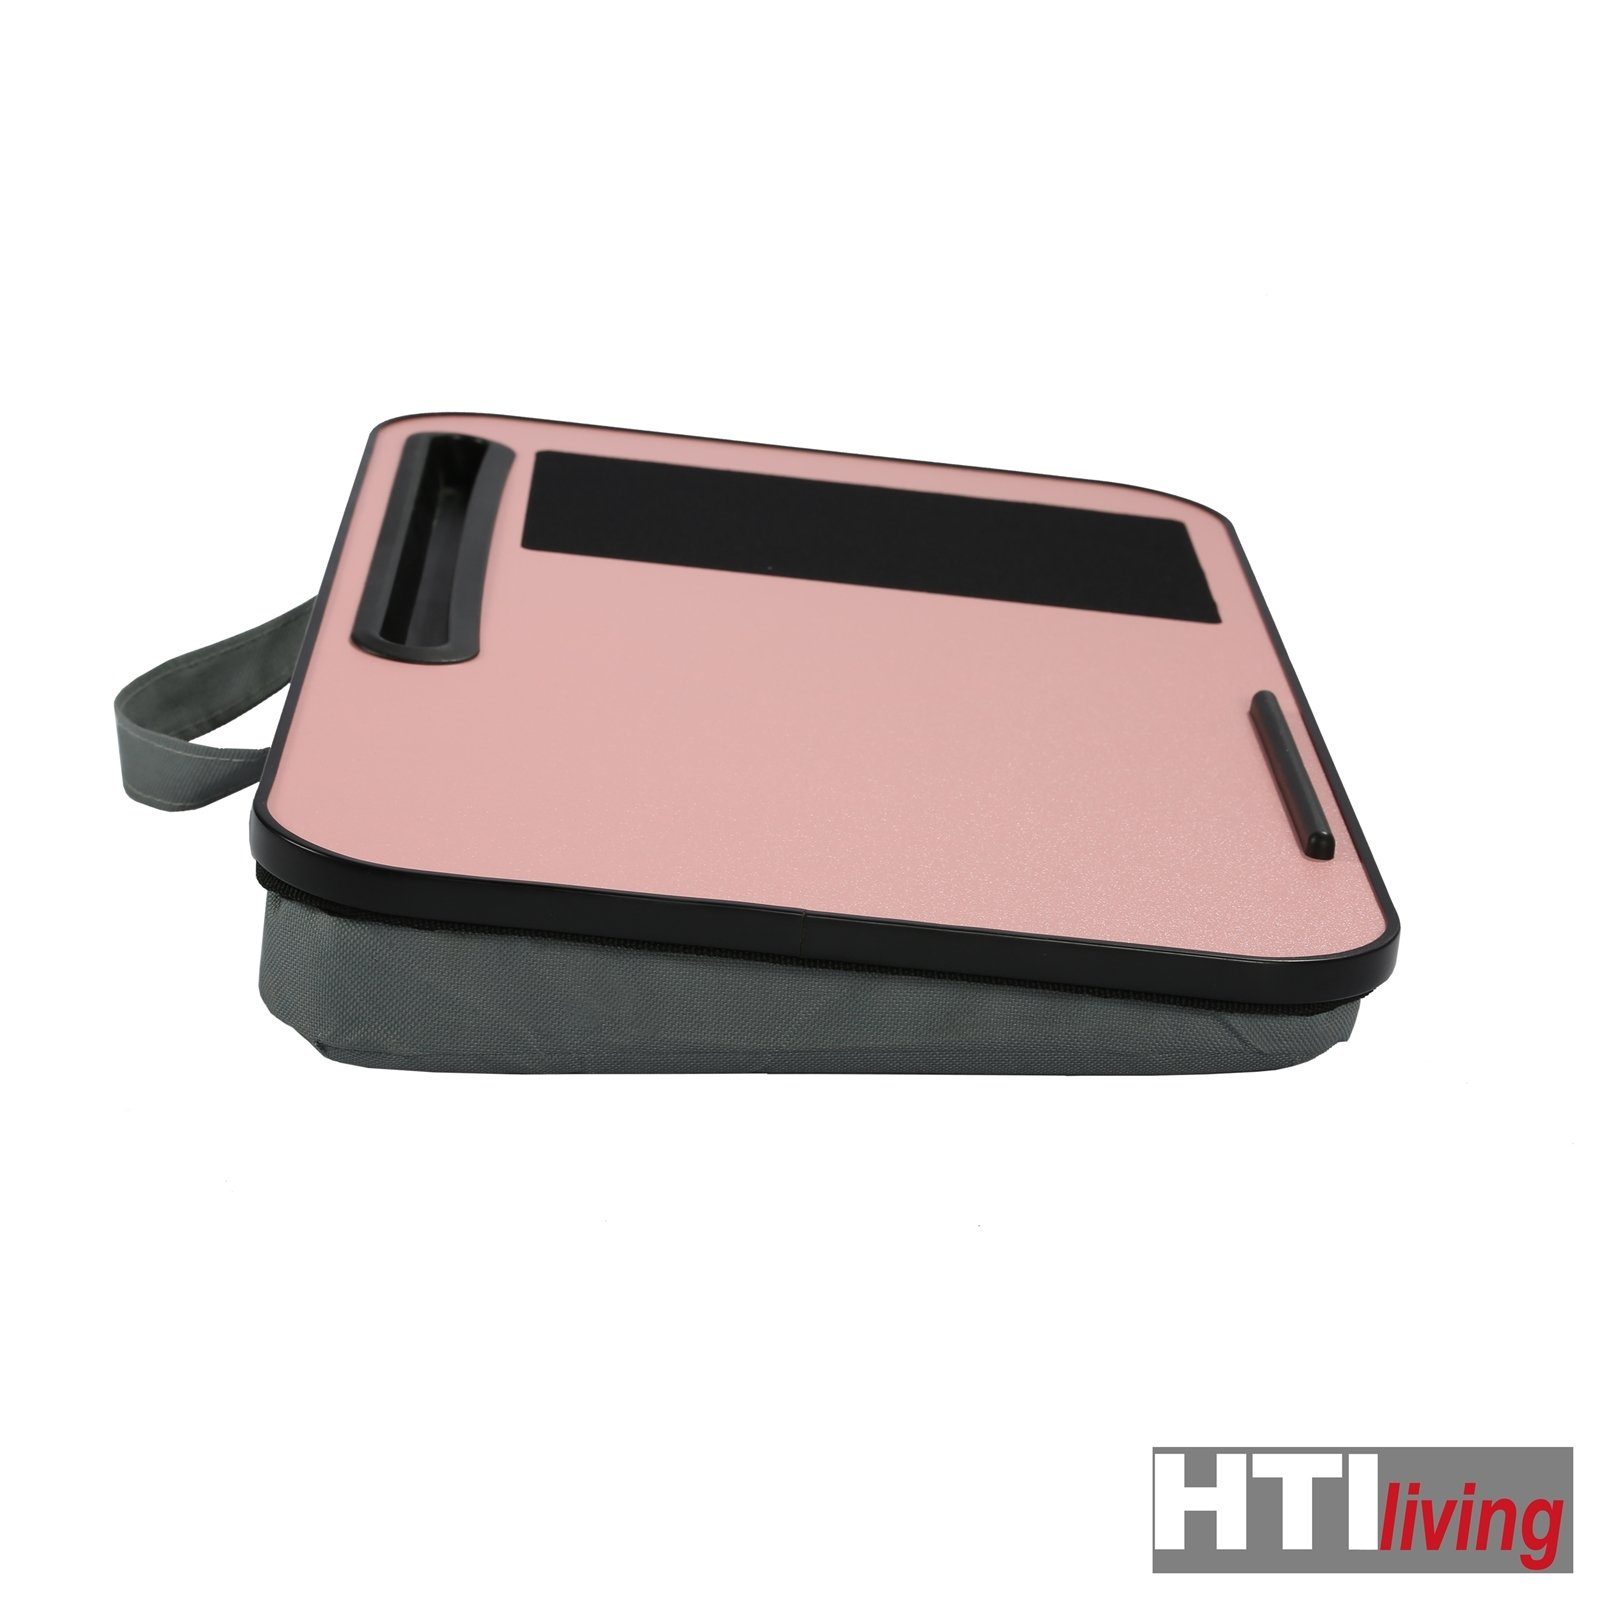 Laptoptisch HTI-Living Pink Laptoptisch Laptoptisch Sansa,